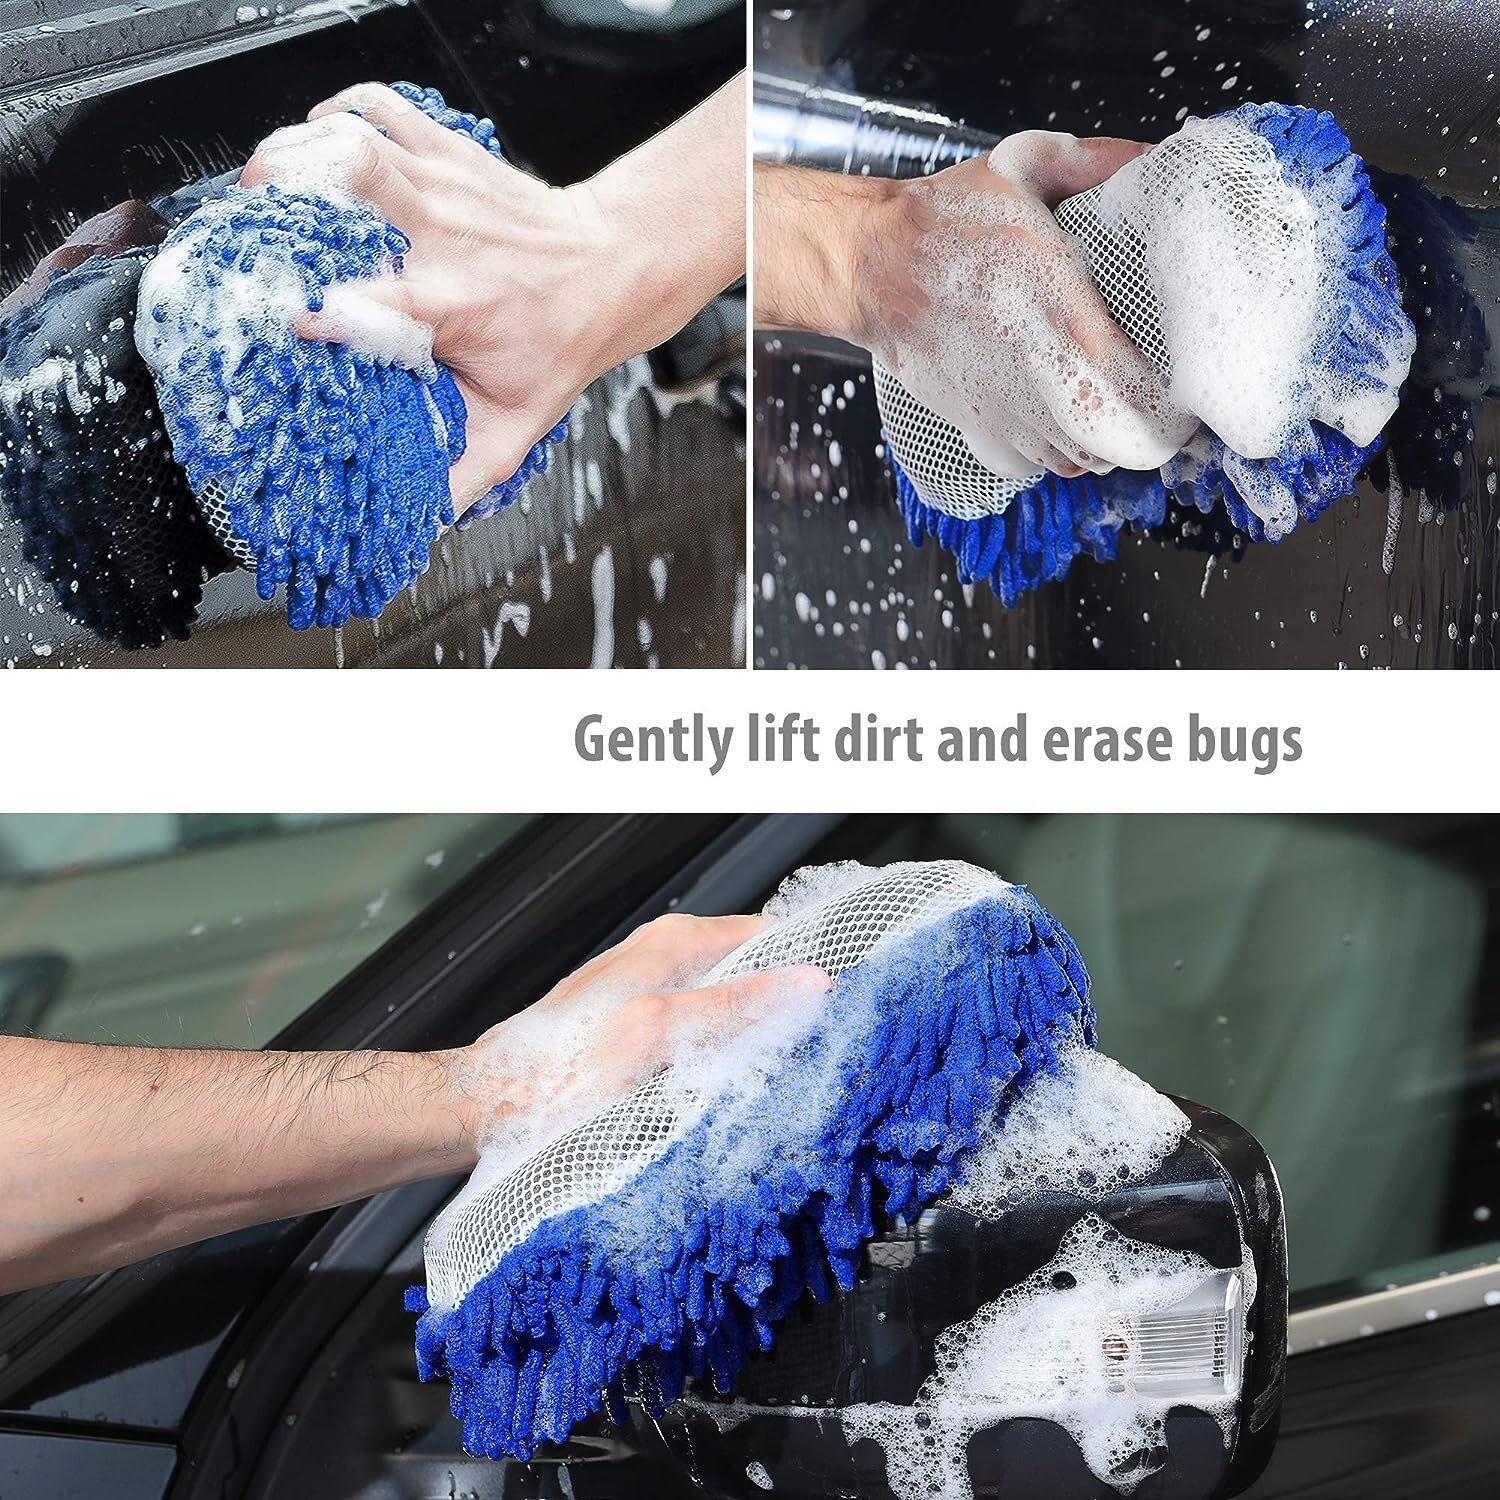 Lavage de voiture épais brossé chiffon propre serviette microfibre